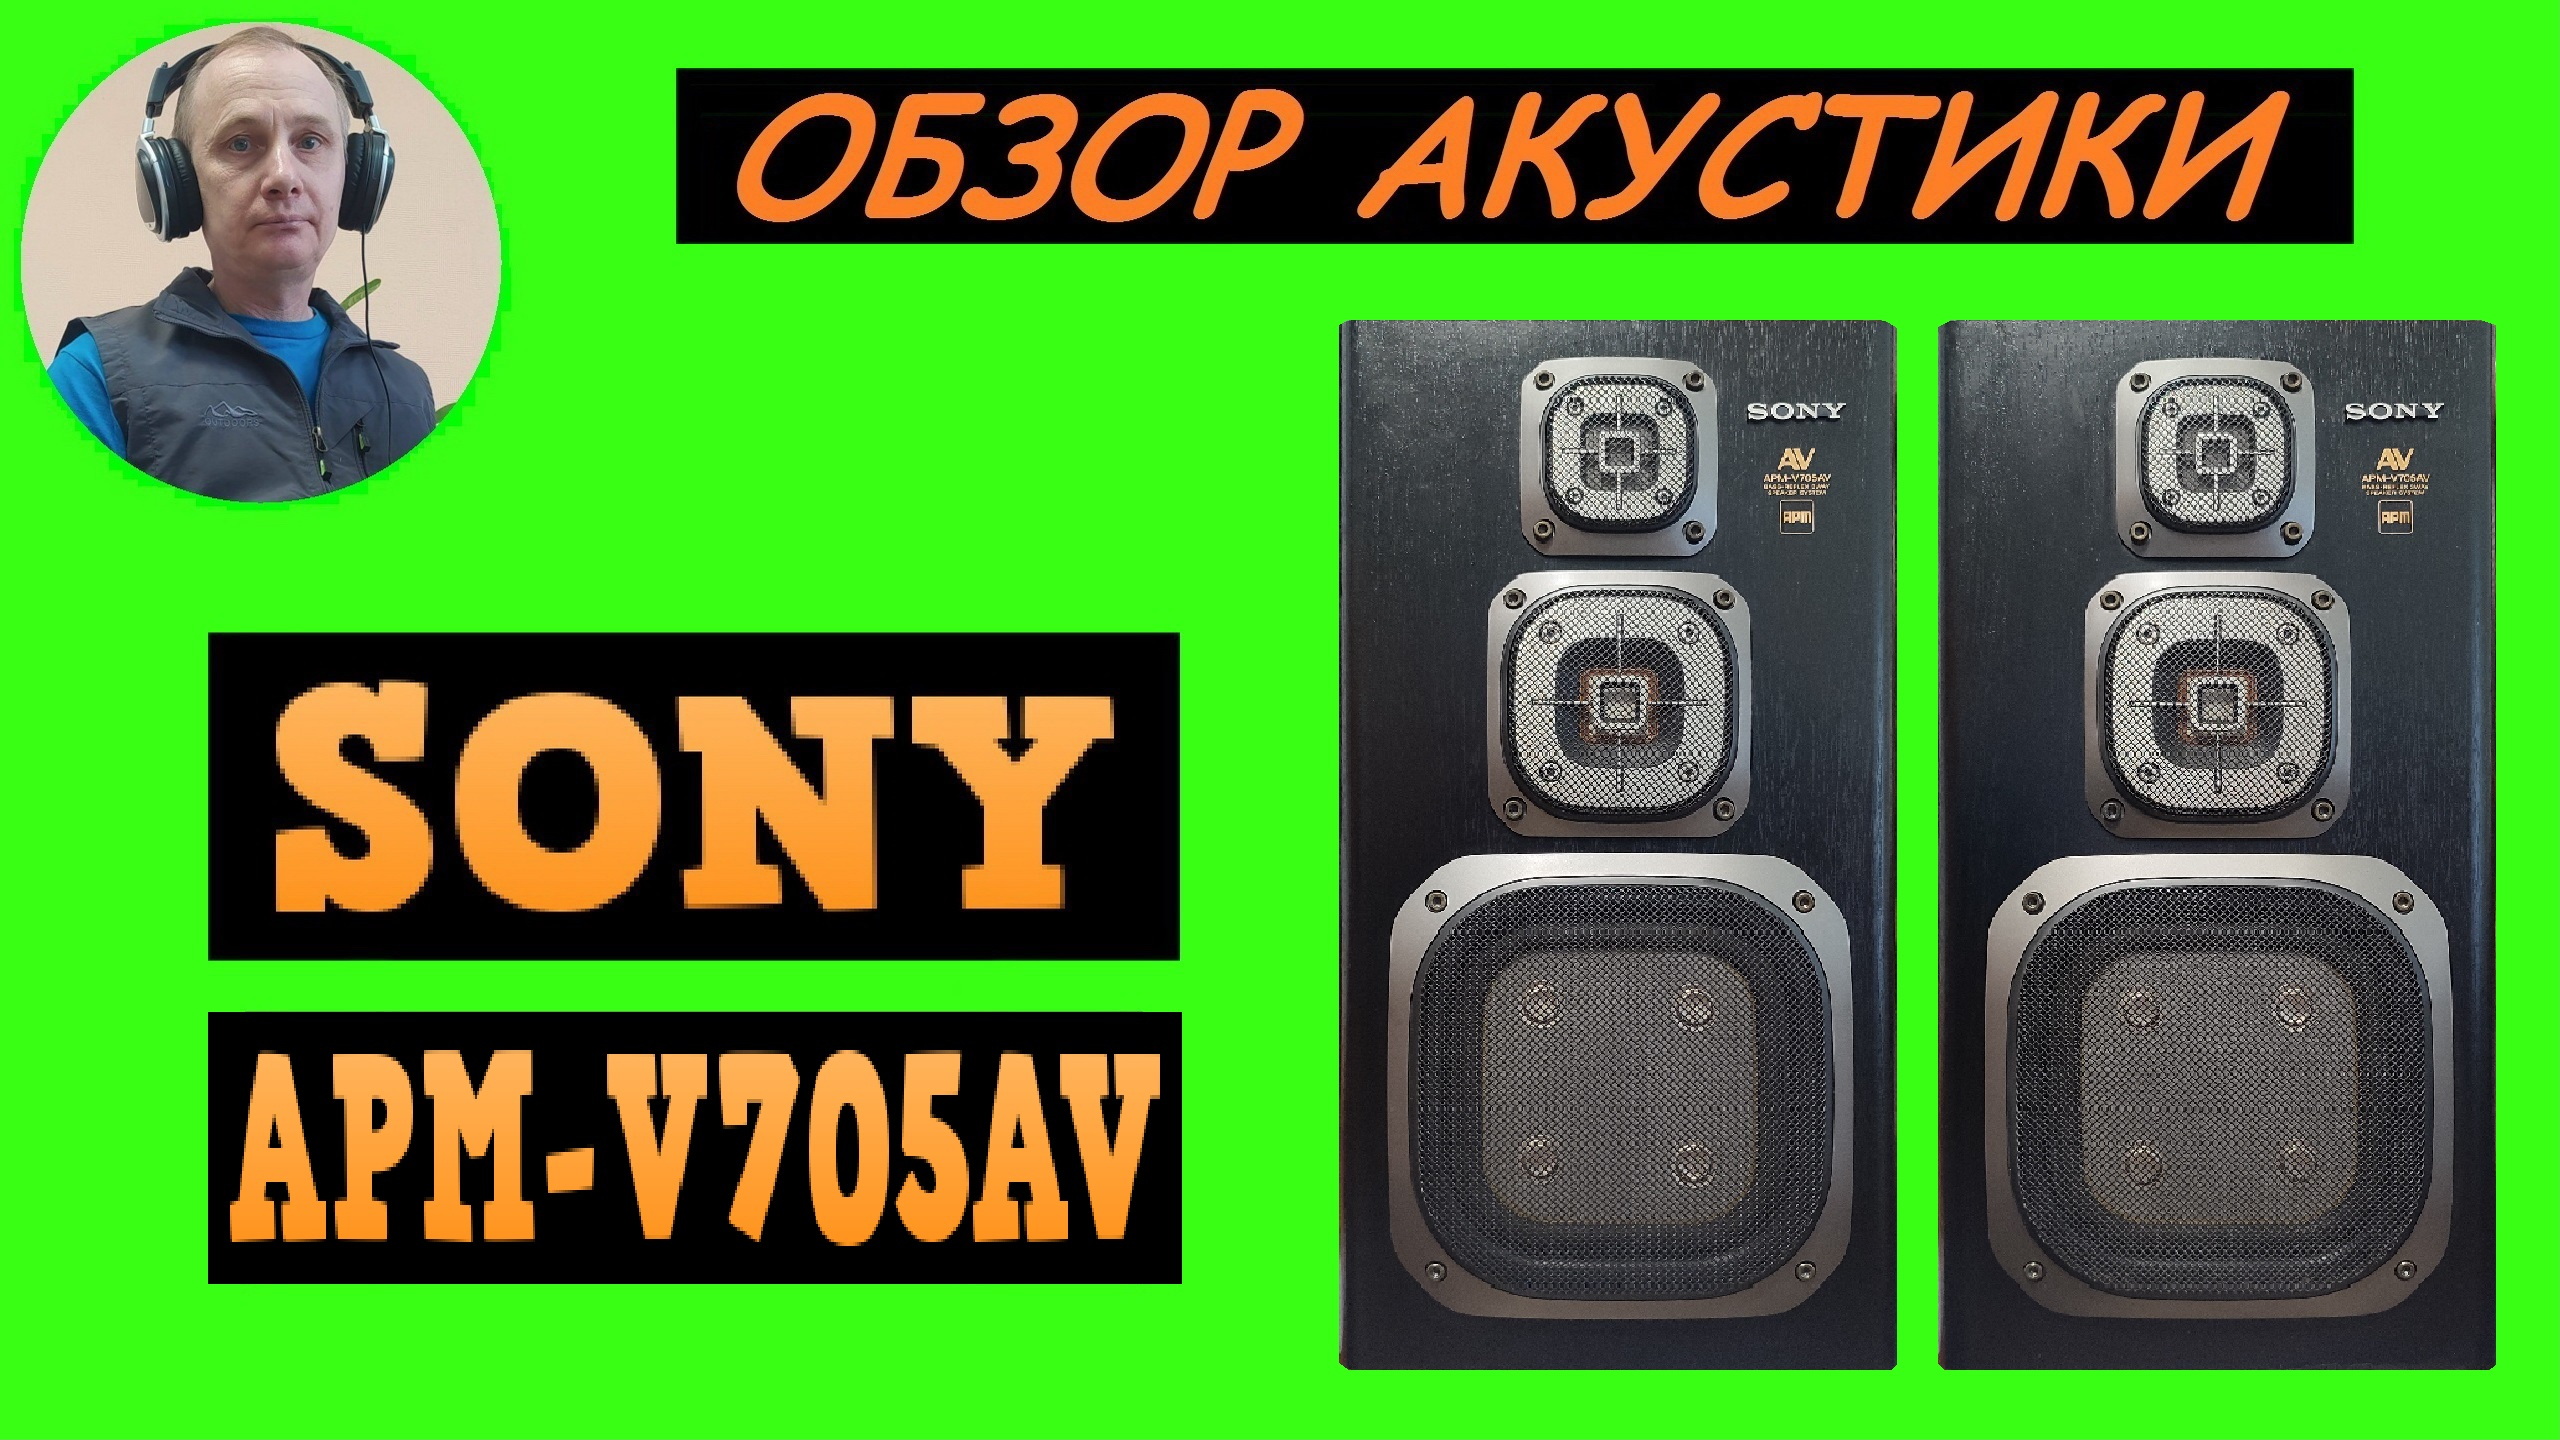 Обзор акустики SONY APM-V705AV